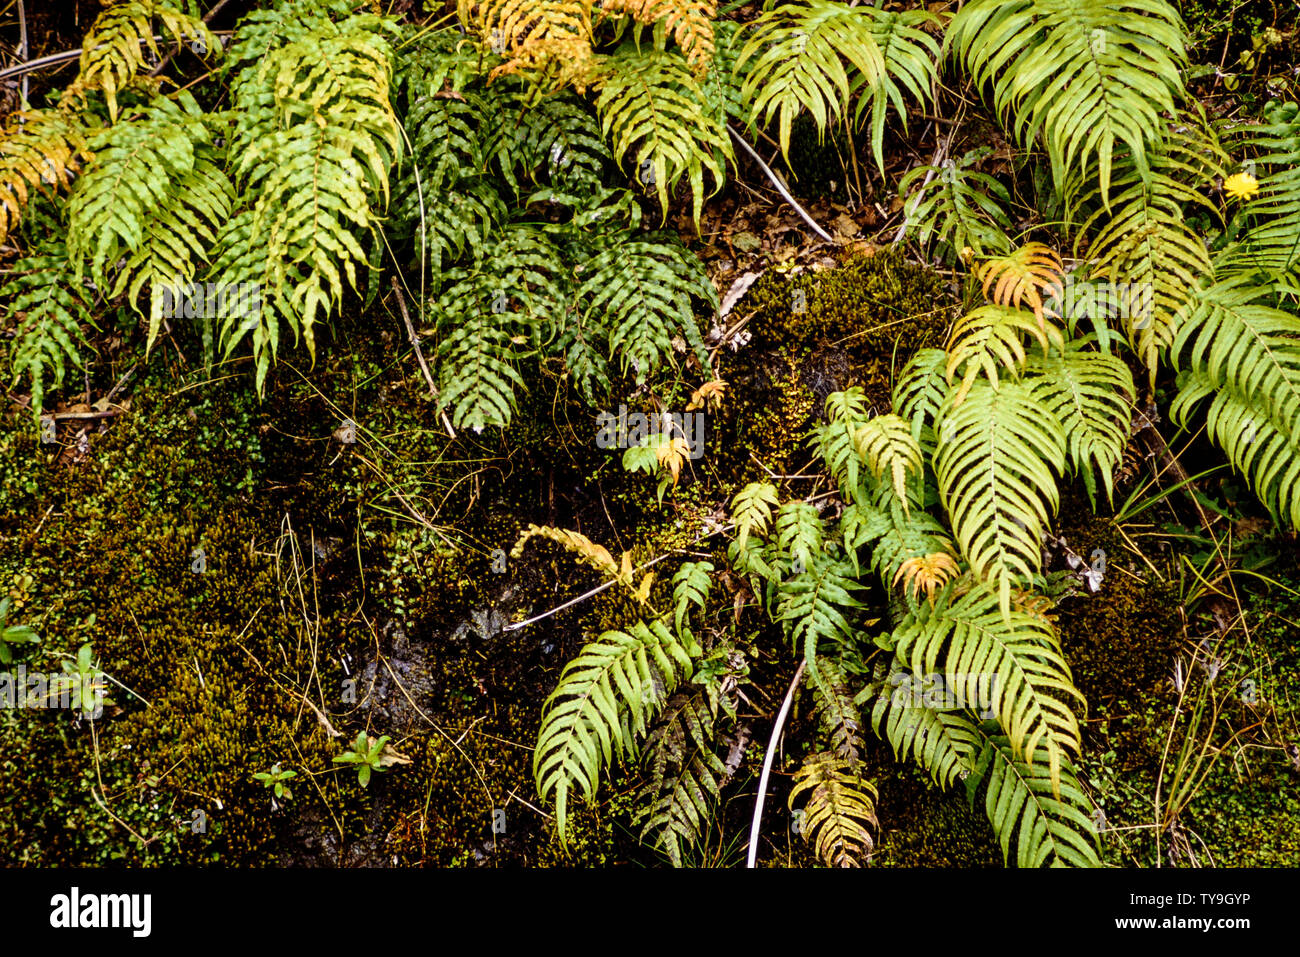 Nuova Zelanda, Isola del Sud. Westland Tai Poutini National Park che contiene molti elementi di foreste pluviali temperate. come le felci crescente nella calda Foto Stock